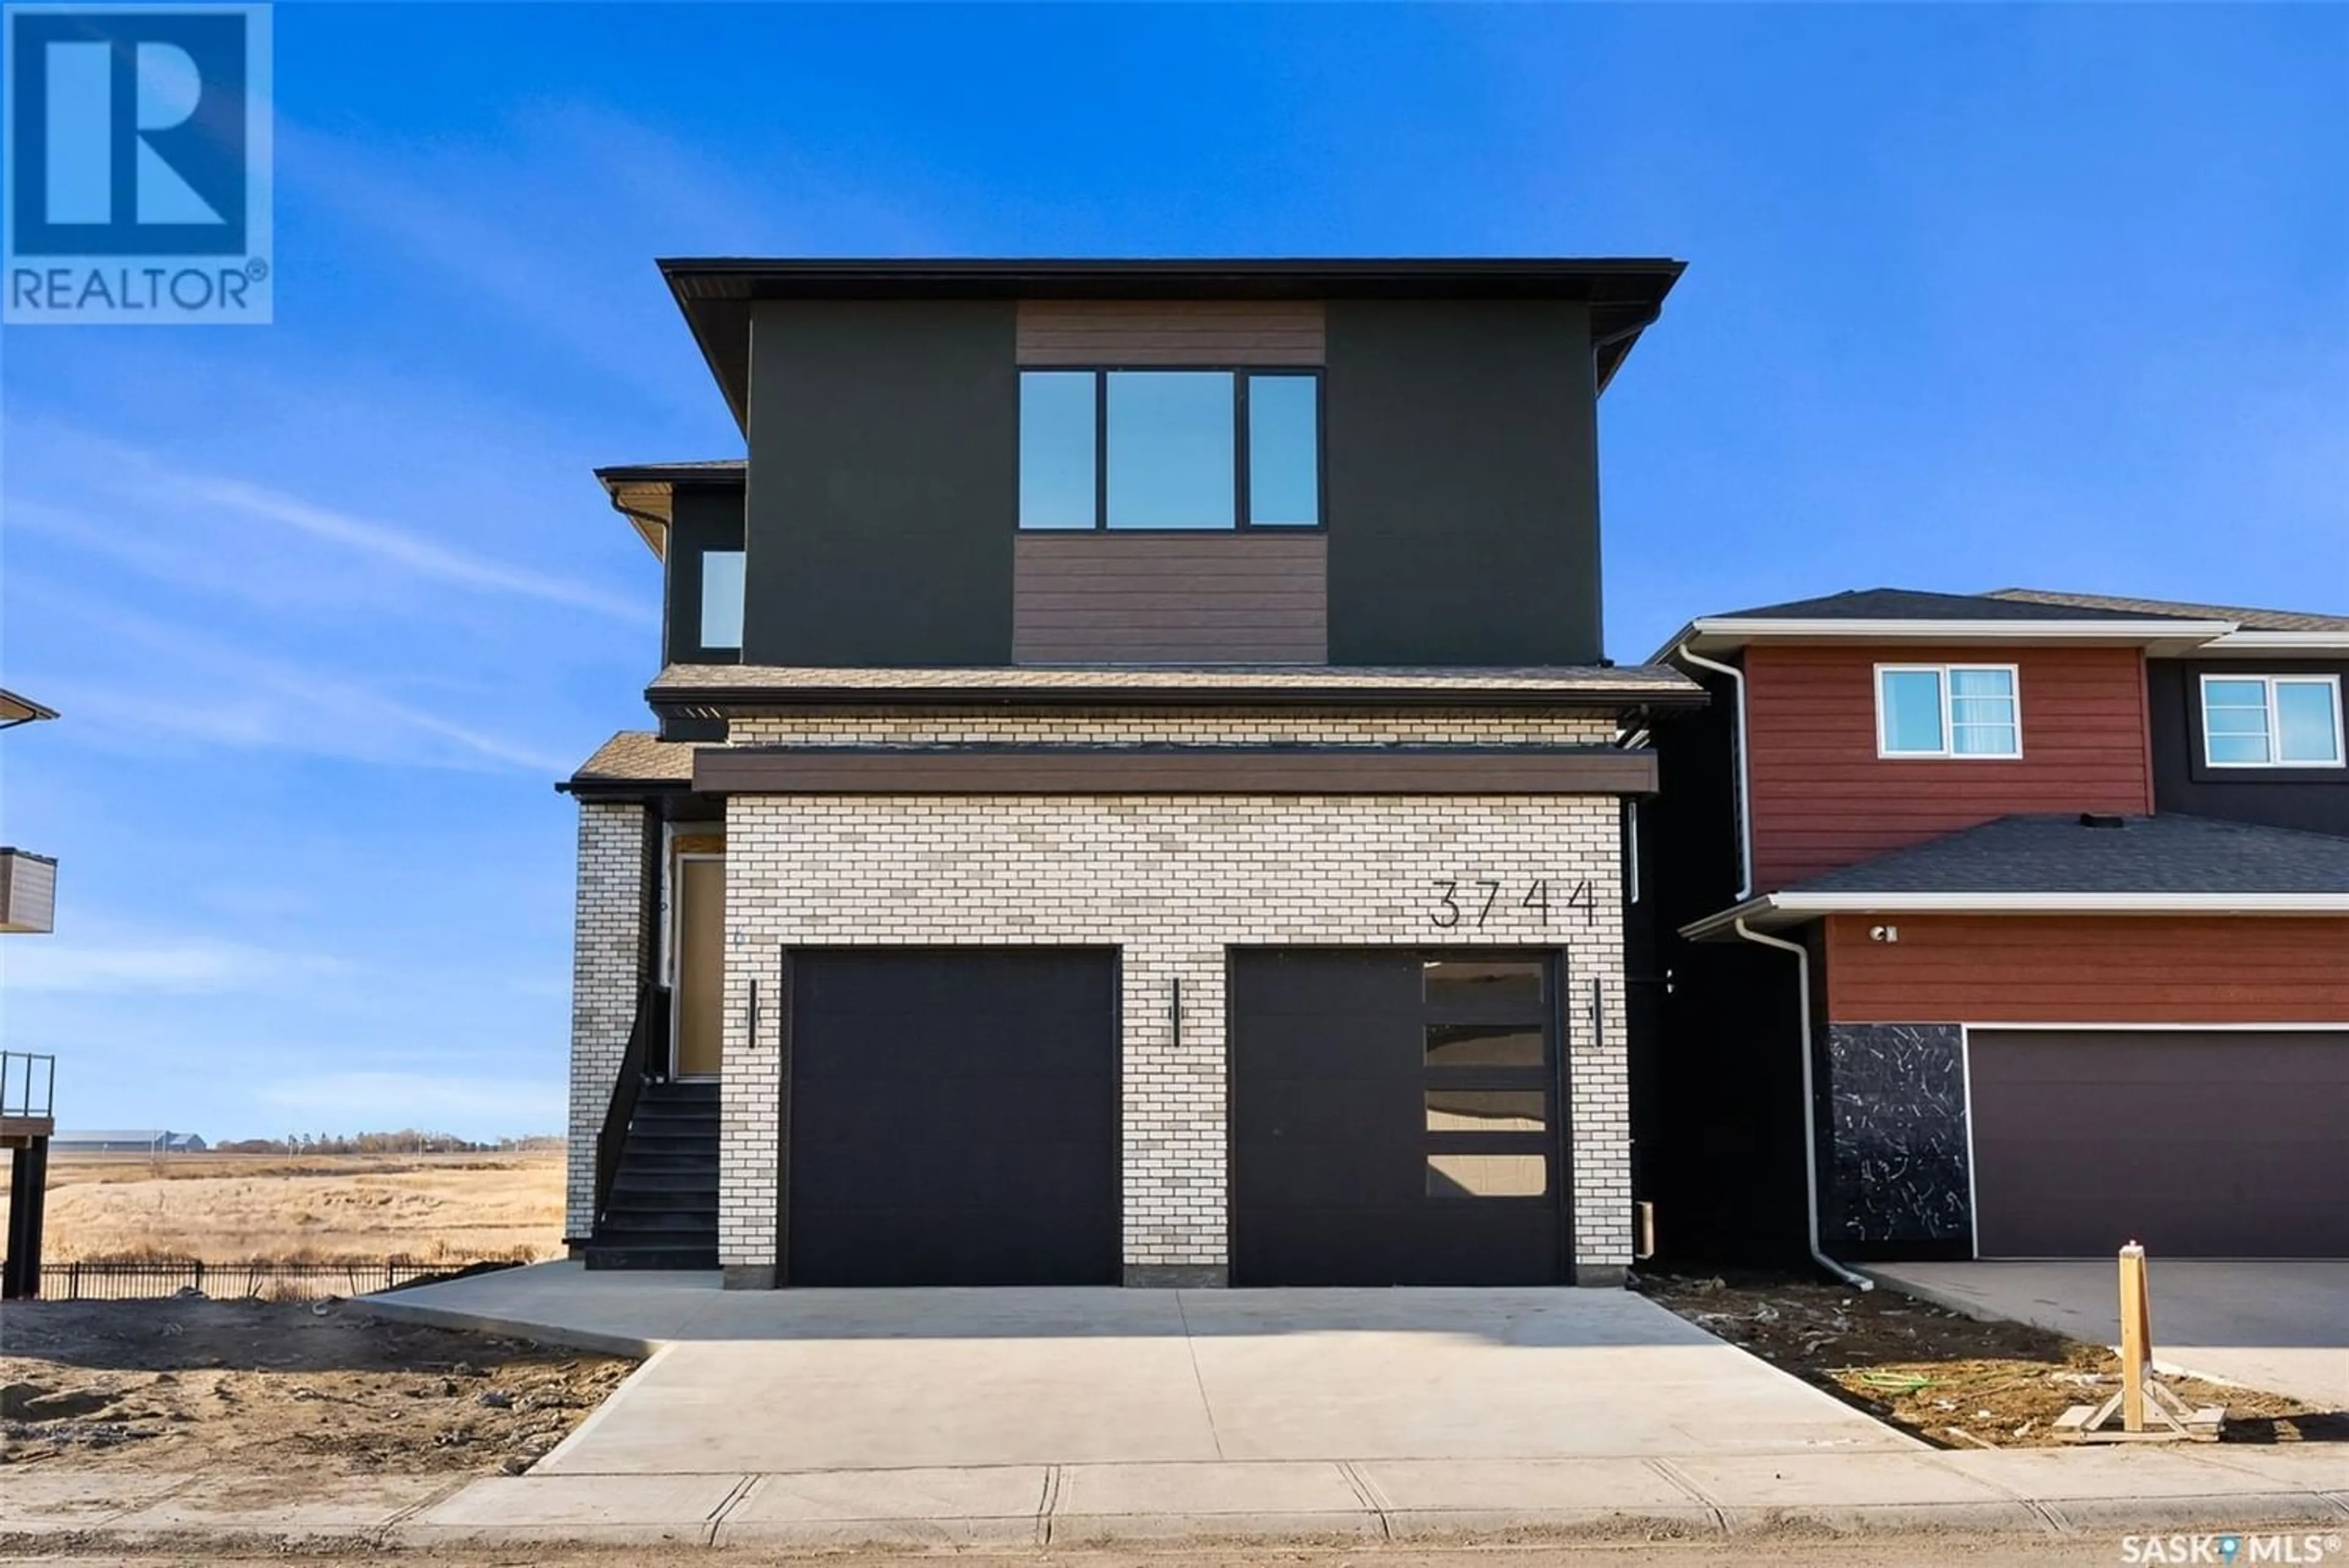 Home with brick exterior material for 3744 Gee CRESCENT, Regina Saskatchewan S4V3P1